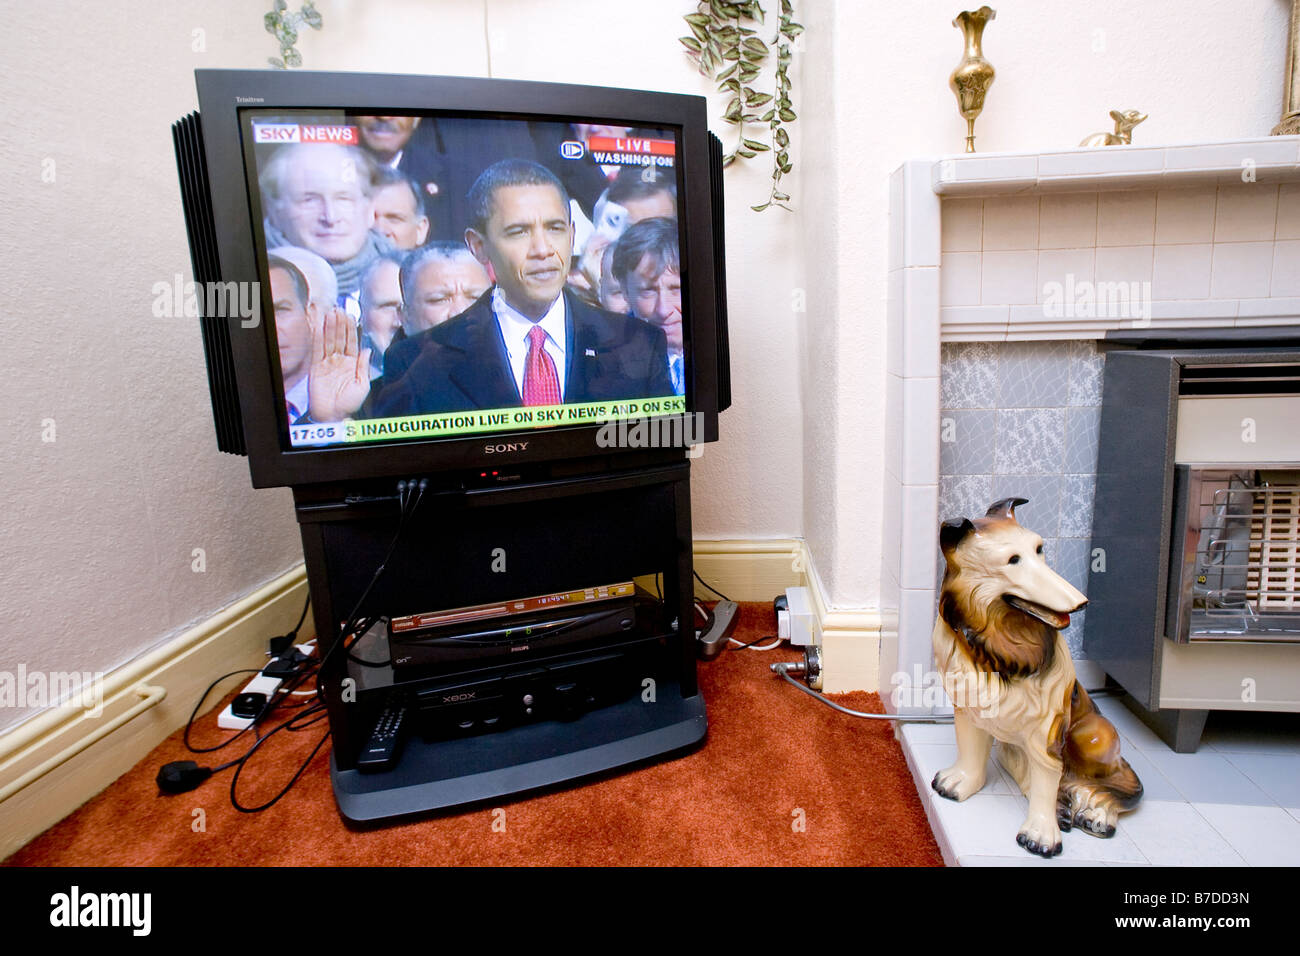 Vue en direct à la télévision au Royaume-Uni Barack Obama est assermenté à titre de 44e président des États-Unis. Banque D'Images